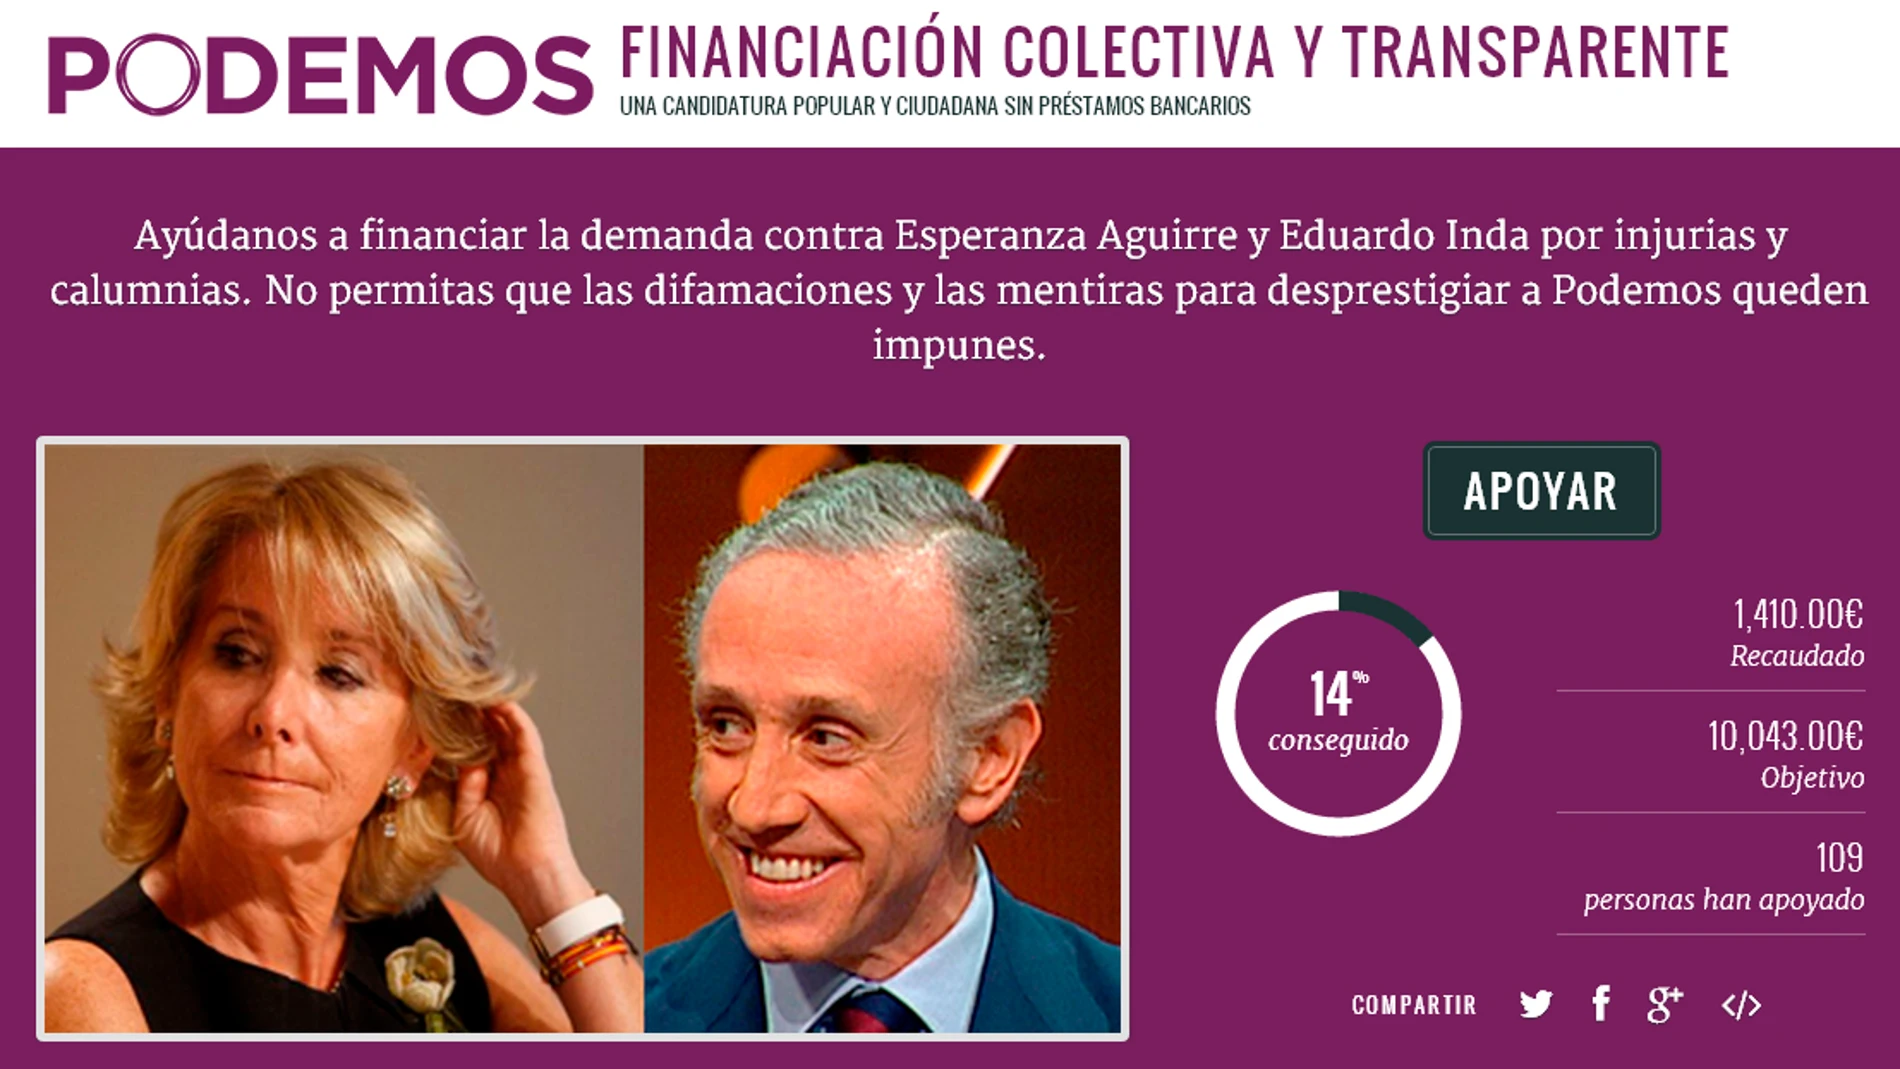 Podemos crea un crowfunding para financiar la demanda contra Aguirre e Inda